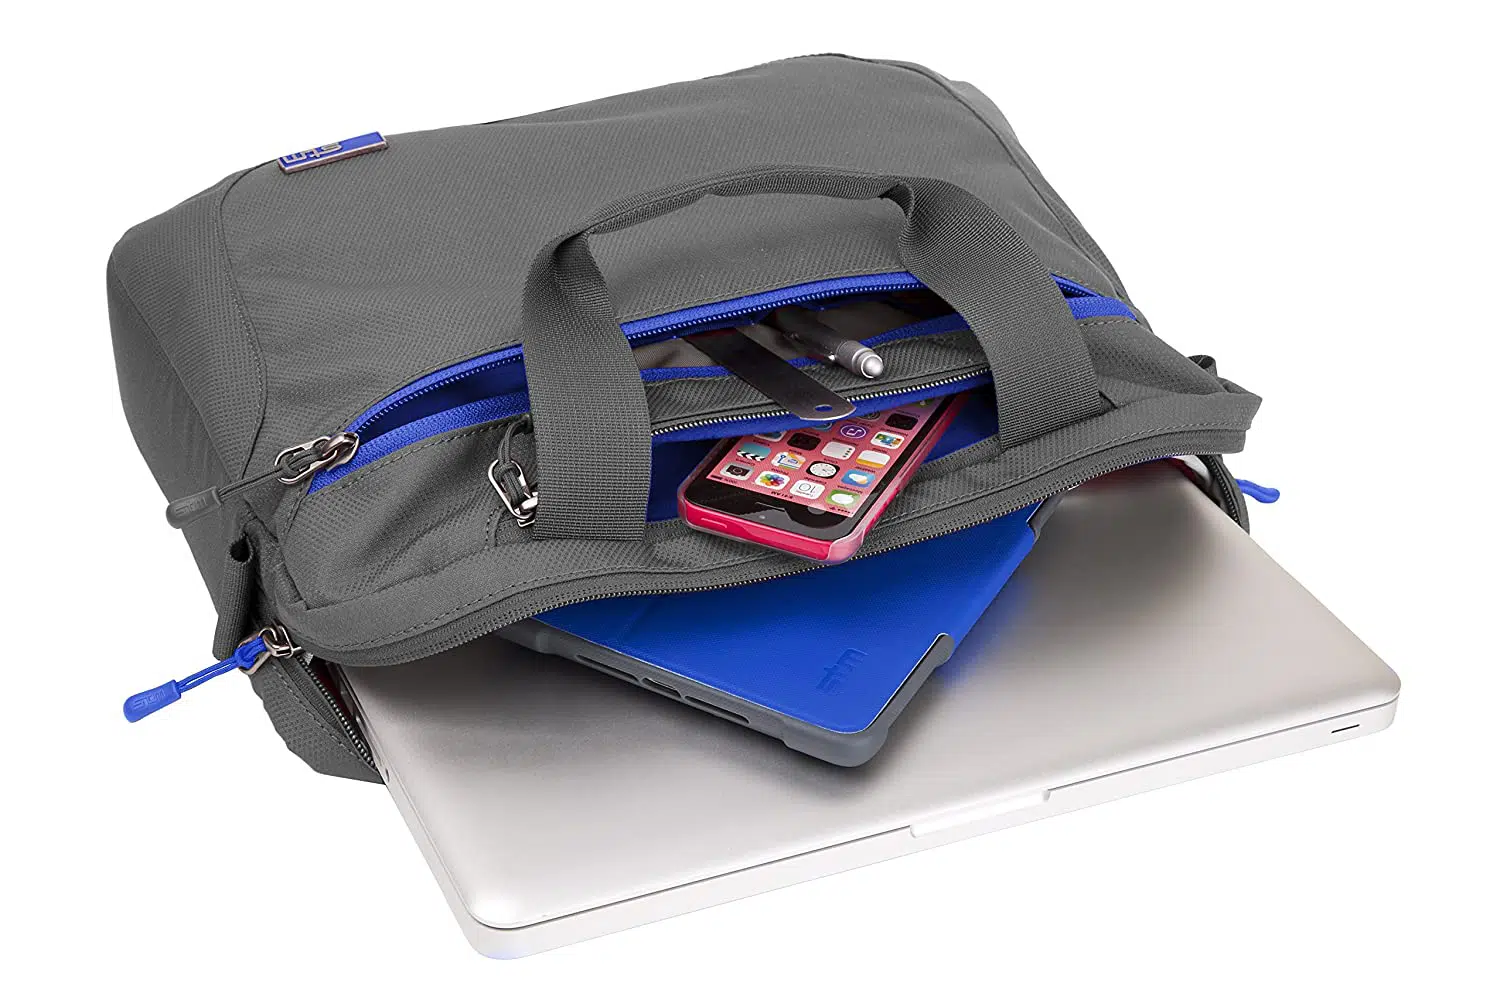 กระเป๋าโน๊ตบุ๊ค STM รุ่น Swift Shoulder Bag (13") - Charcoal